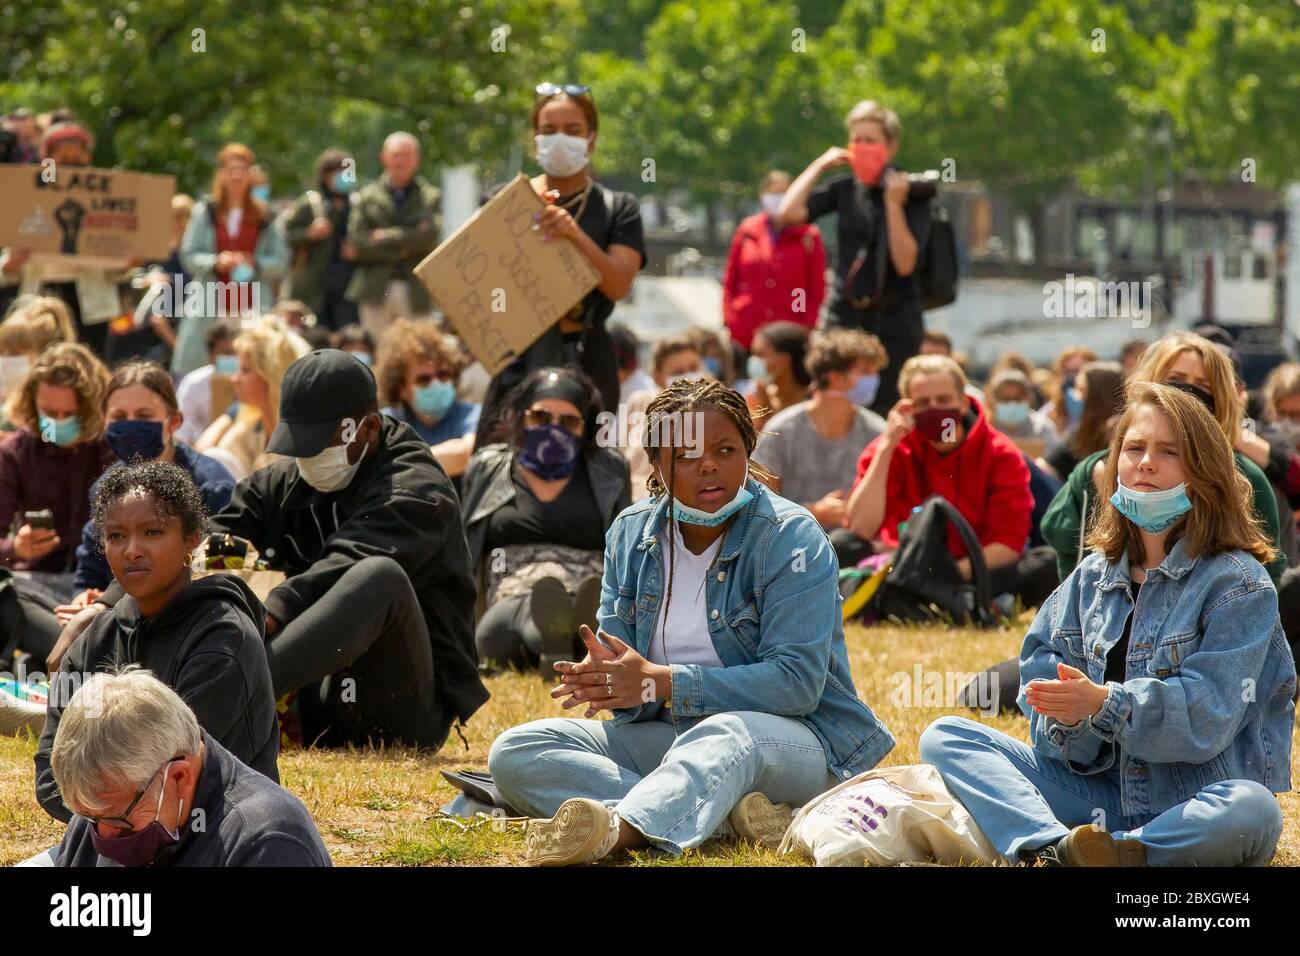 7 giugno 2020 Maastricht, Paesi Bassi il 7 giugno 2020, a Maastricht, Paesi Bassi, si riuniscono per una protesta contro il razzismo Foto Stock